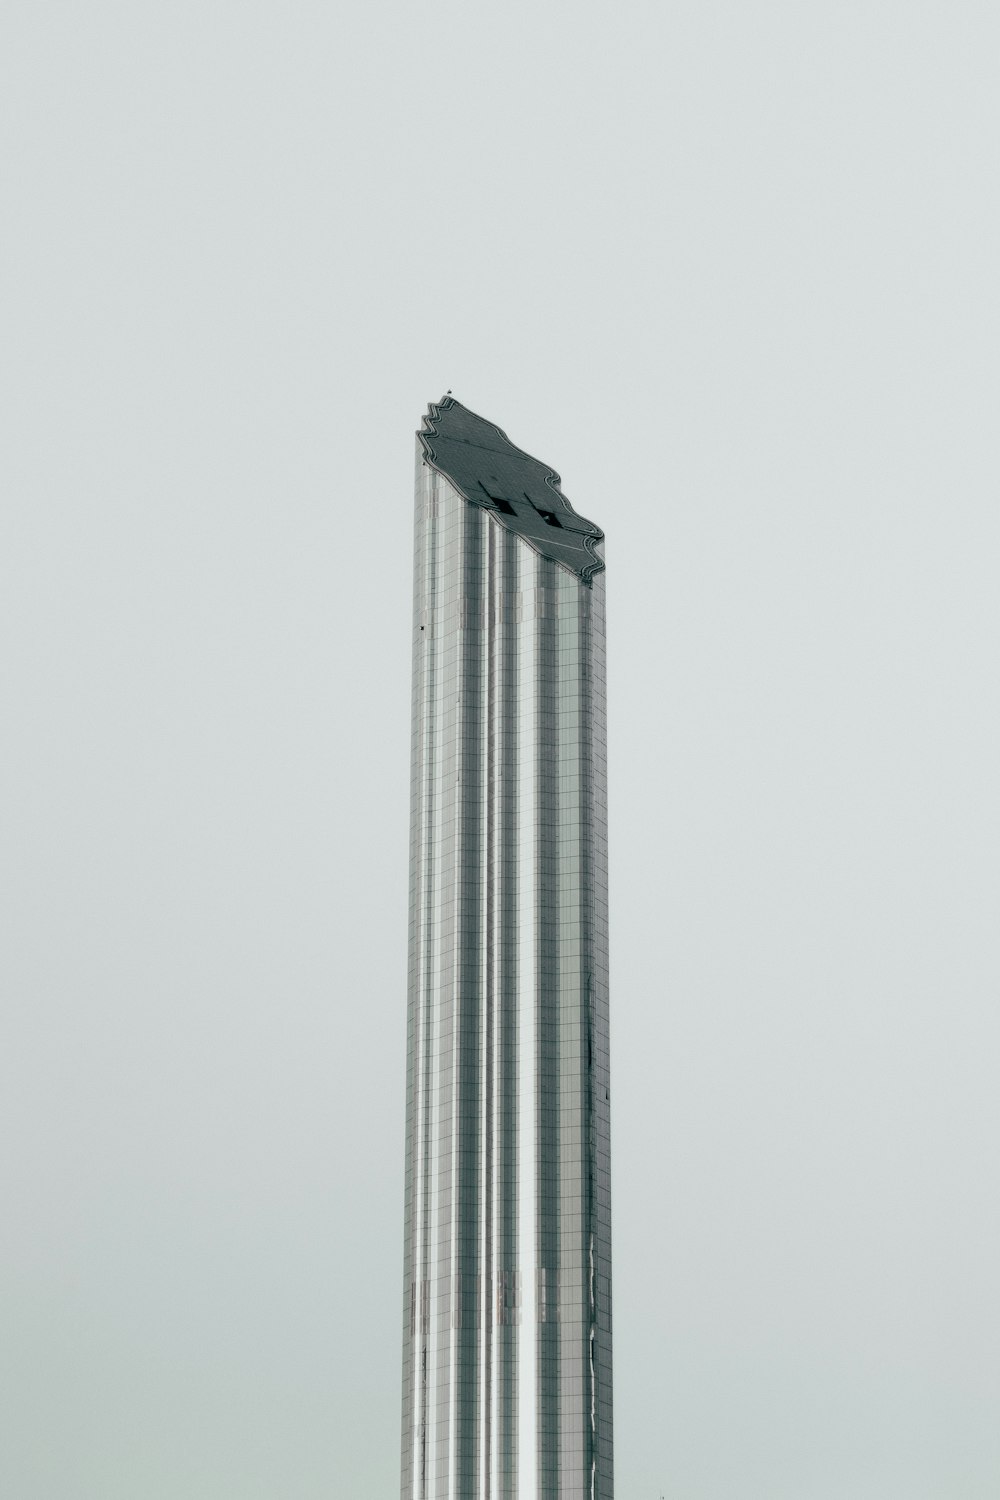 Ein hohes Gebäude mit geschwungener Spitze